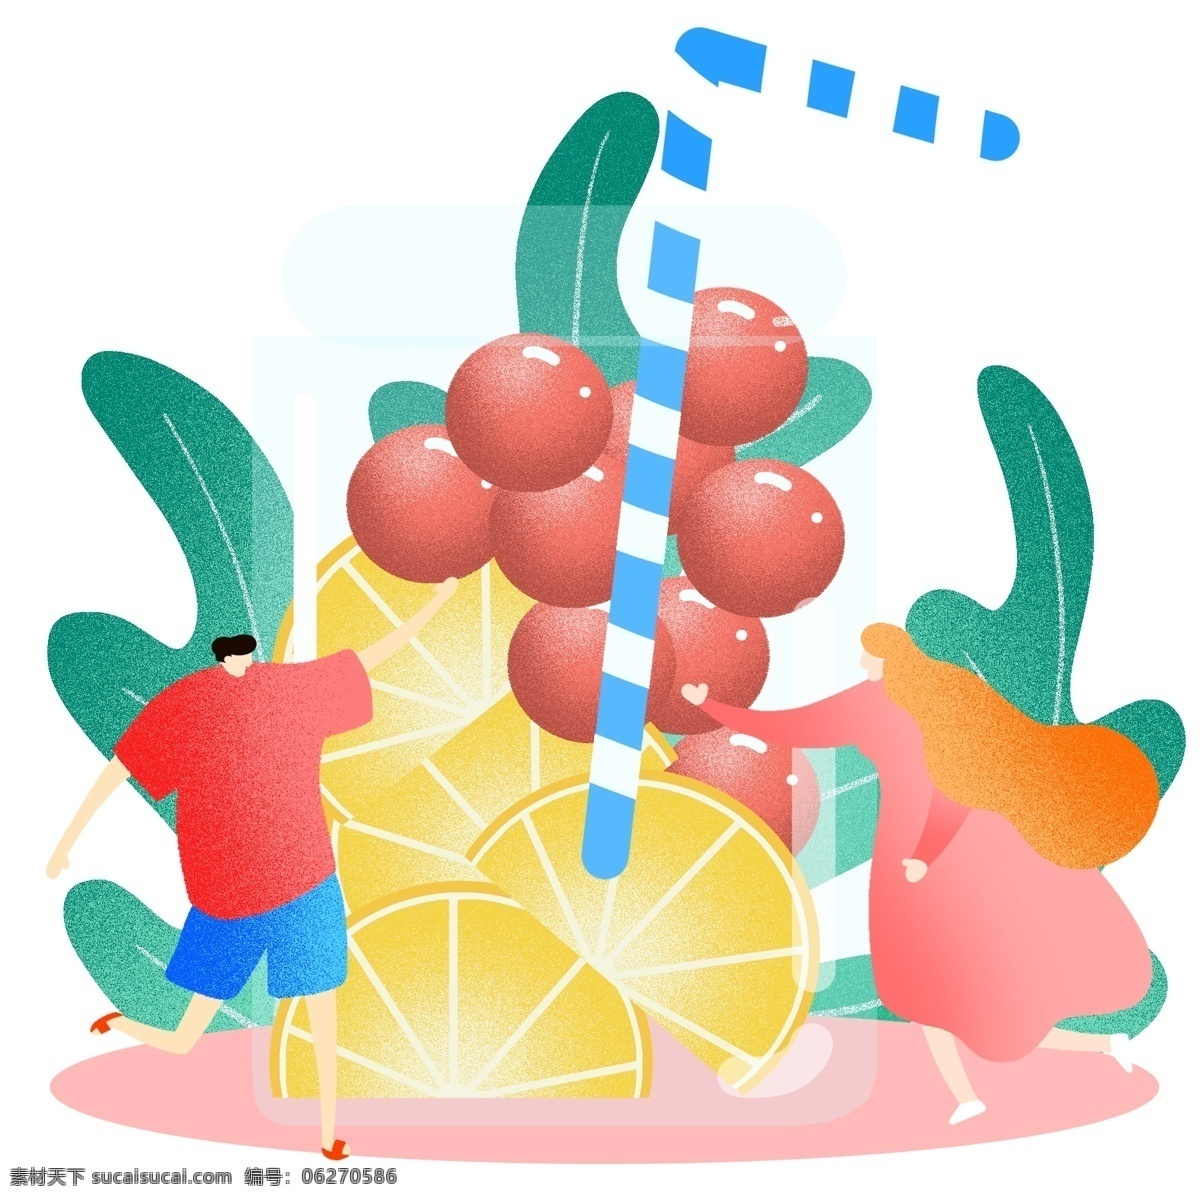 夏季水果果汁 吃货 聚会 水果 果汁 甜点 夏季 夏天